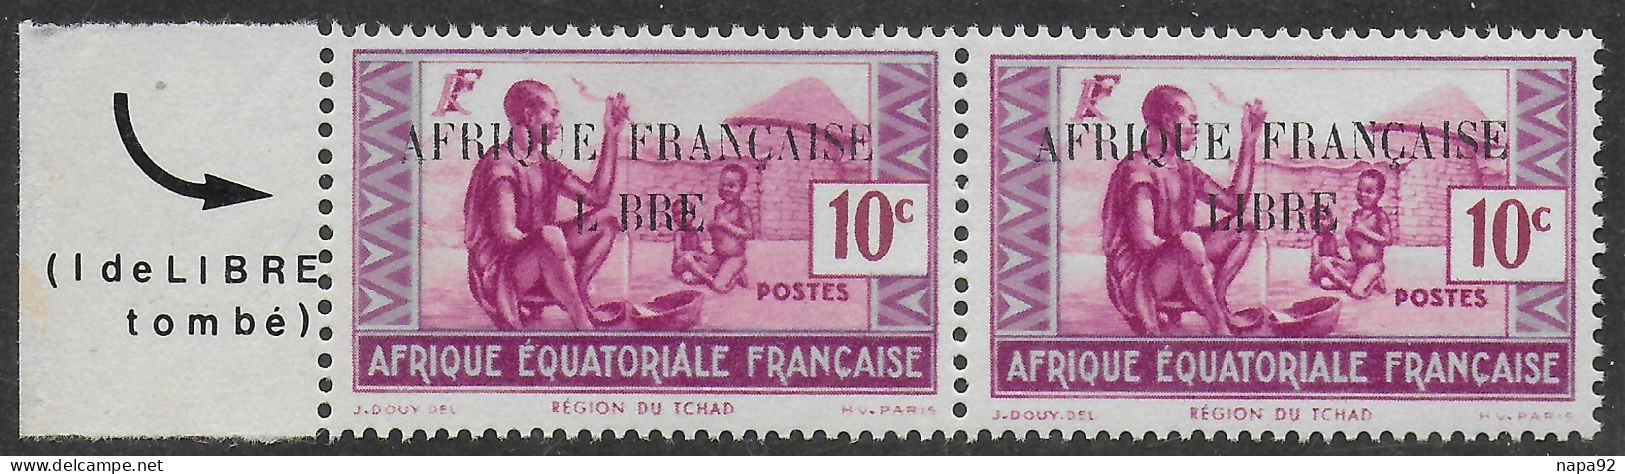 AFRIQUE EQUATORIALE FRANCAISE - AEF - A.E.F. - 1940 - YT 96** - VARIETE - Ungebraucht